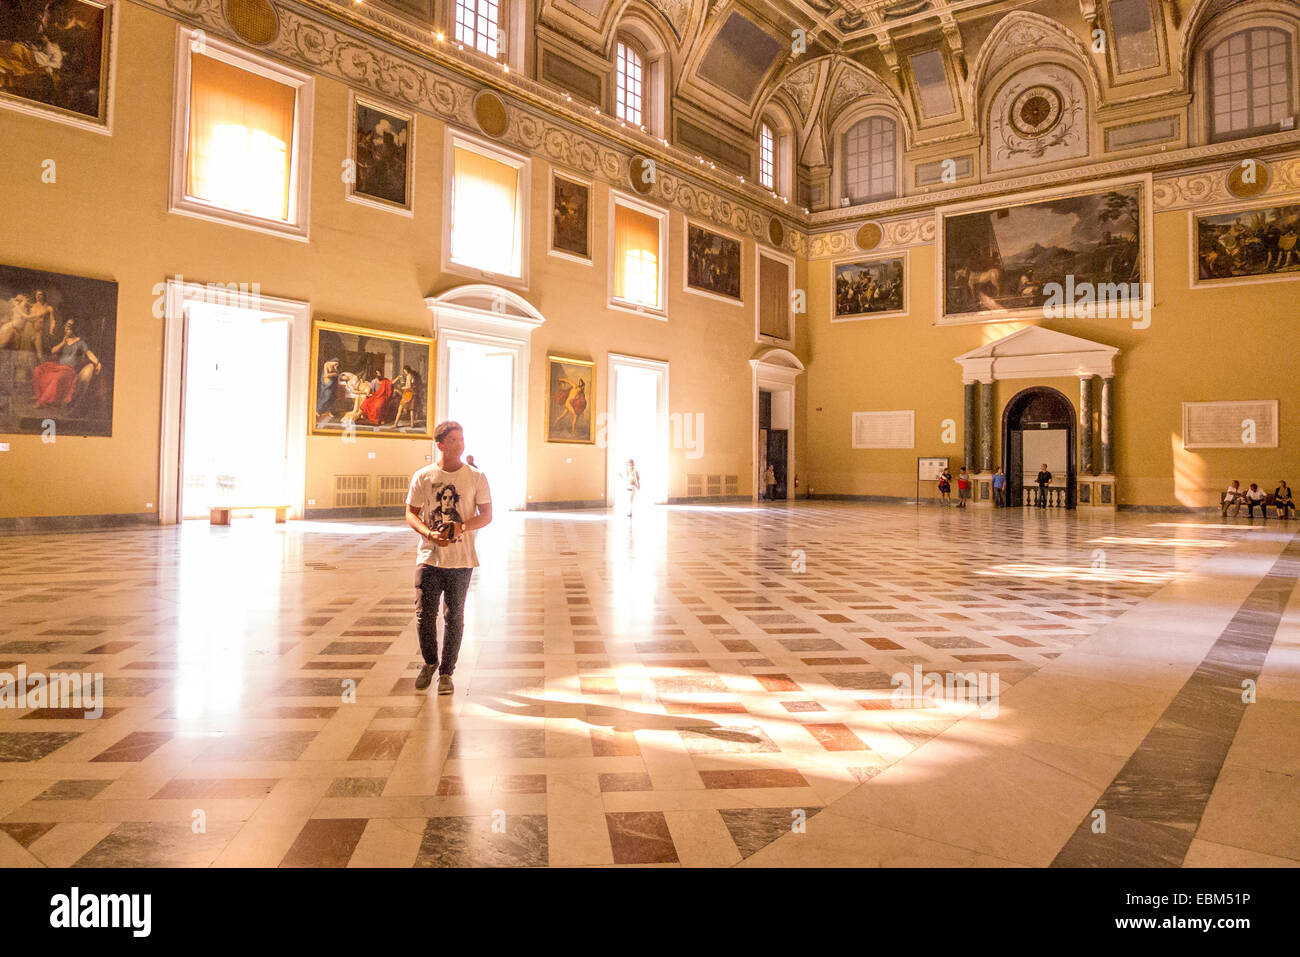 La sala meridiana en el Museo Arqueológico Nacional de Nápoles. Foto de stock